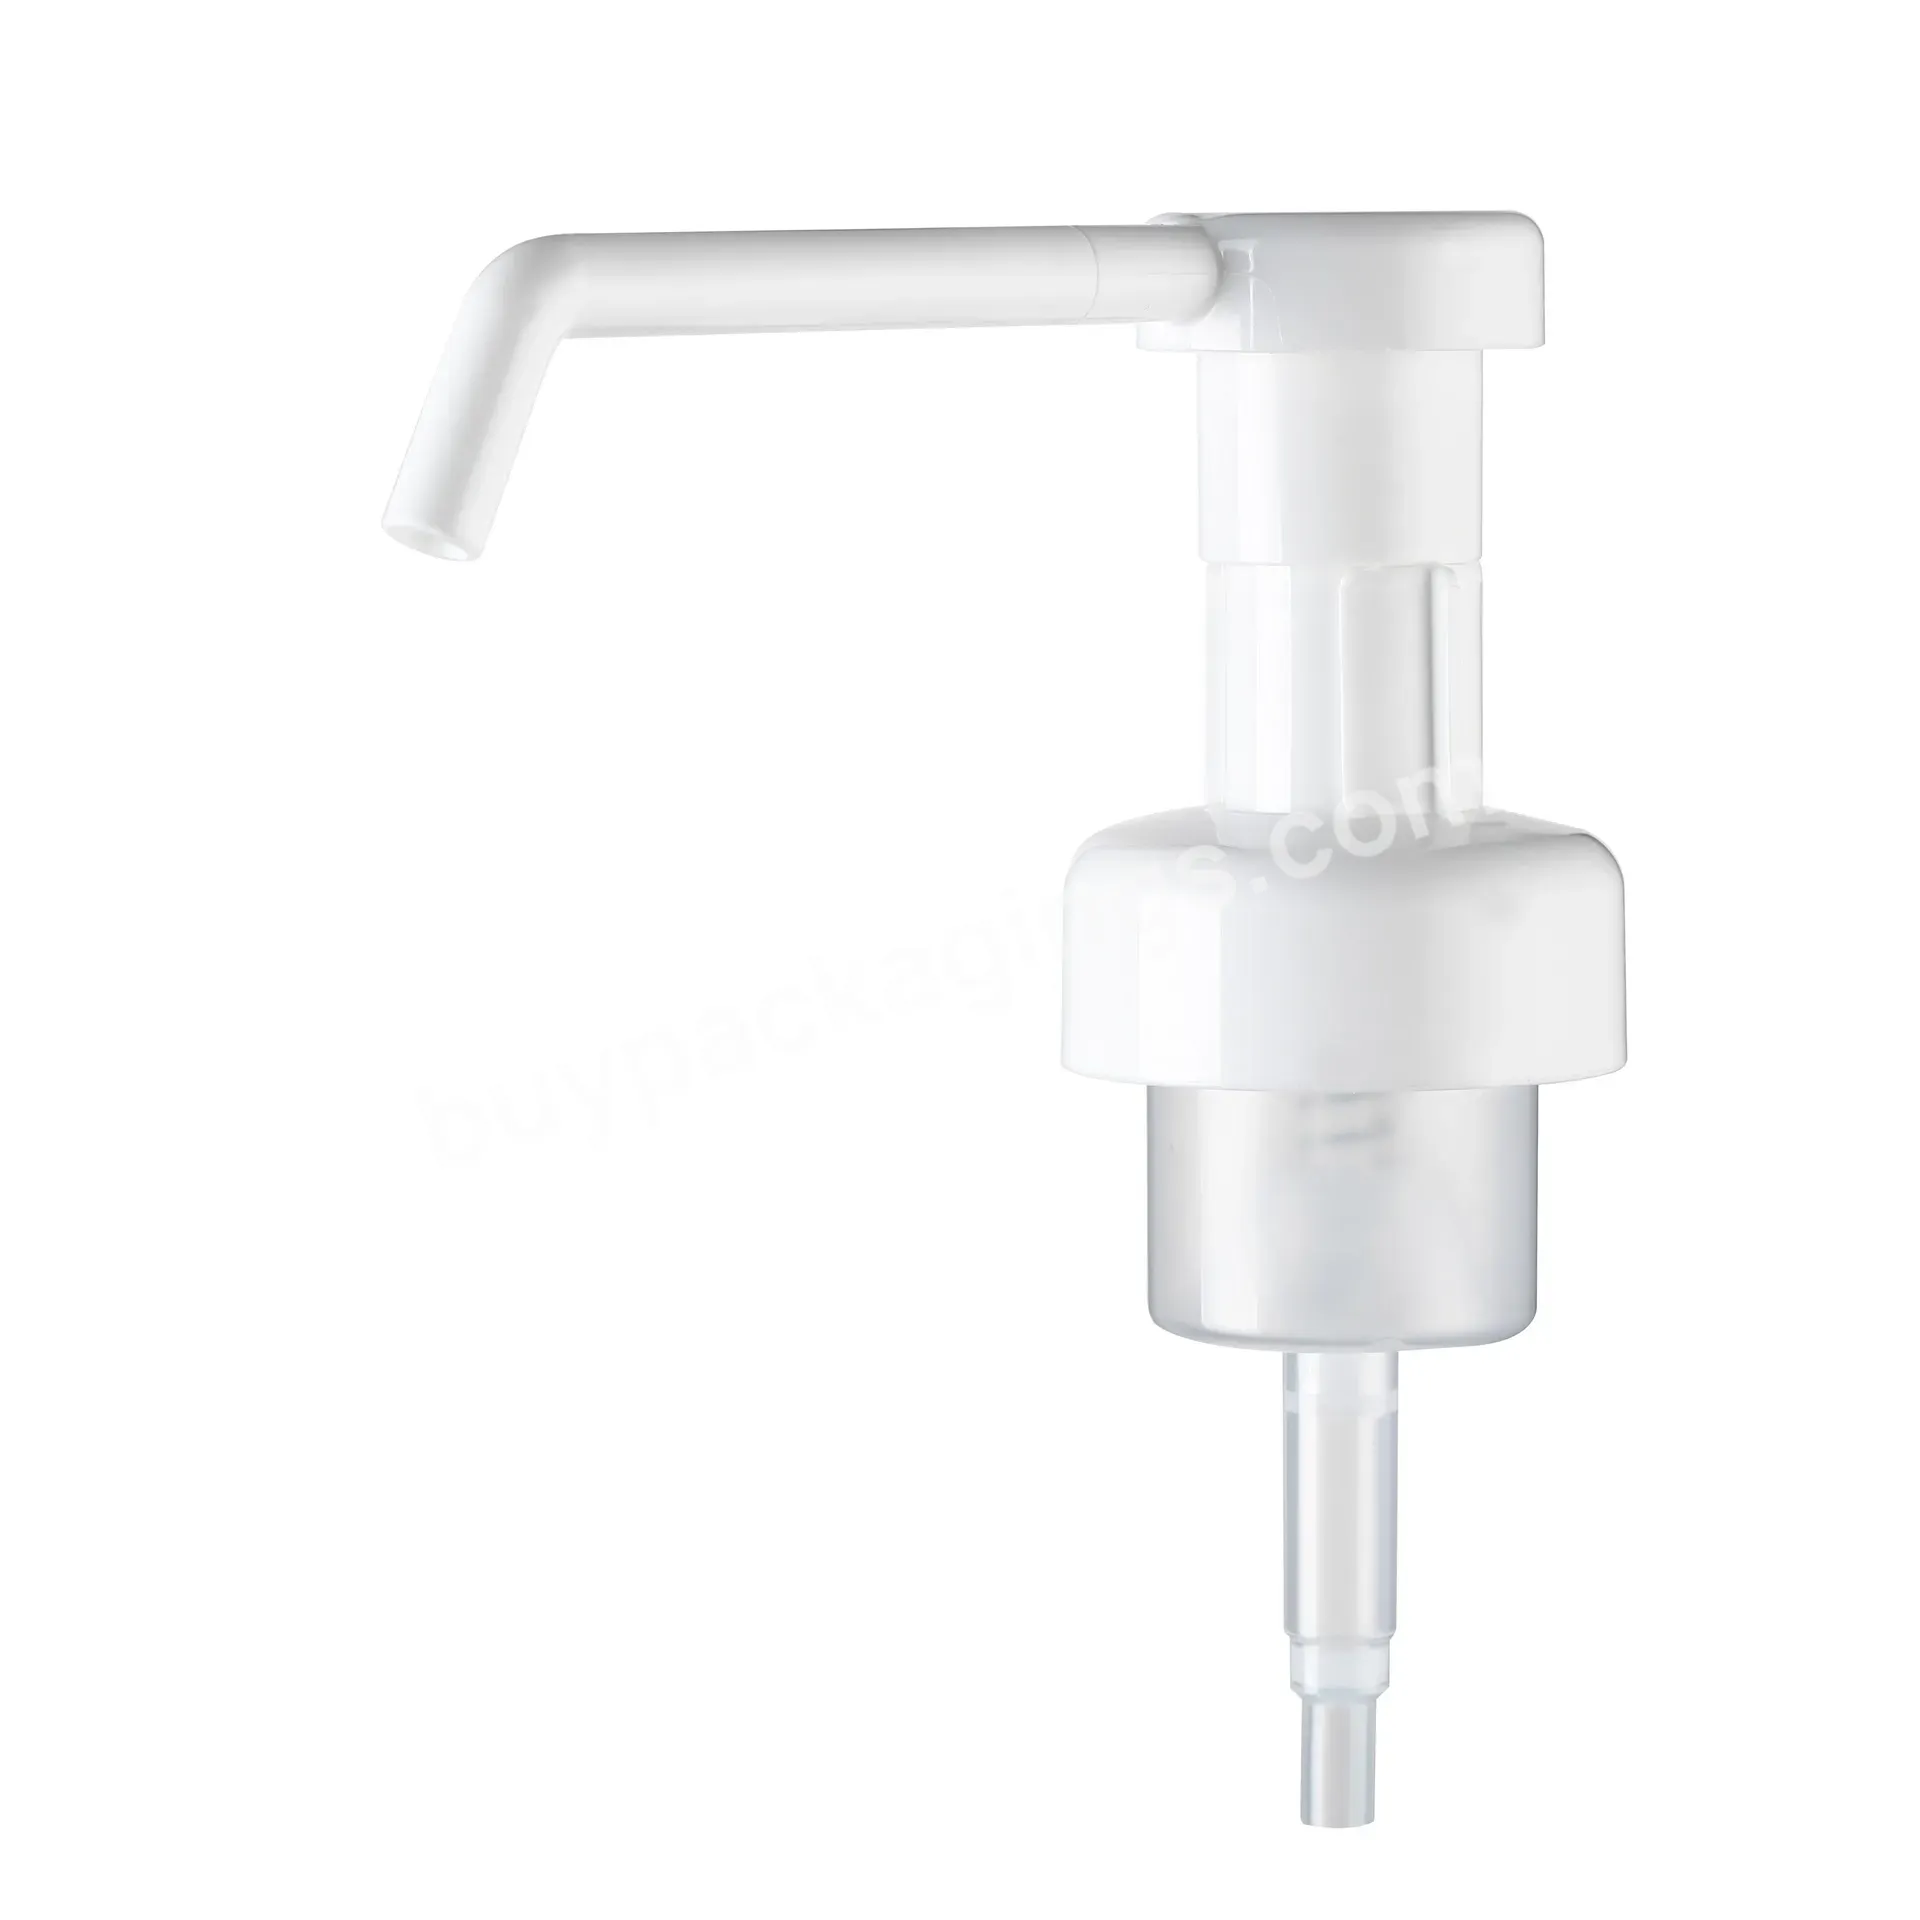 Special Long Nozzle Plastic Pp 43mm Foam Hand Soap Dispenser Pump